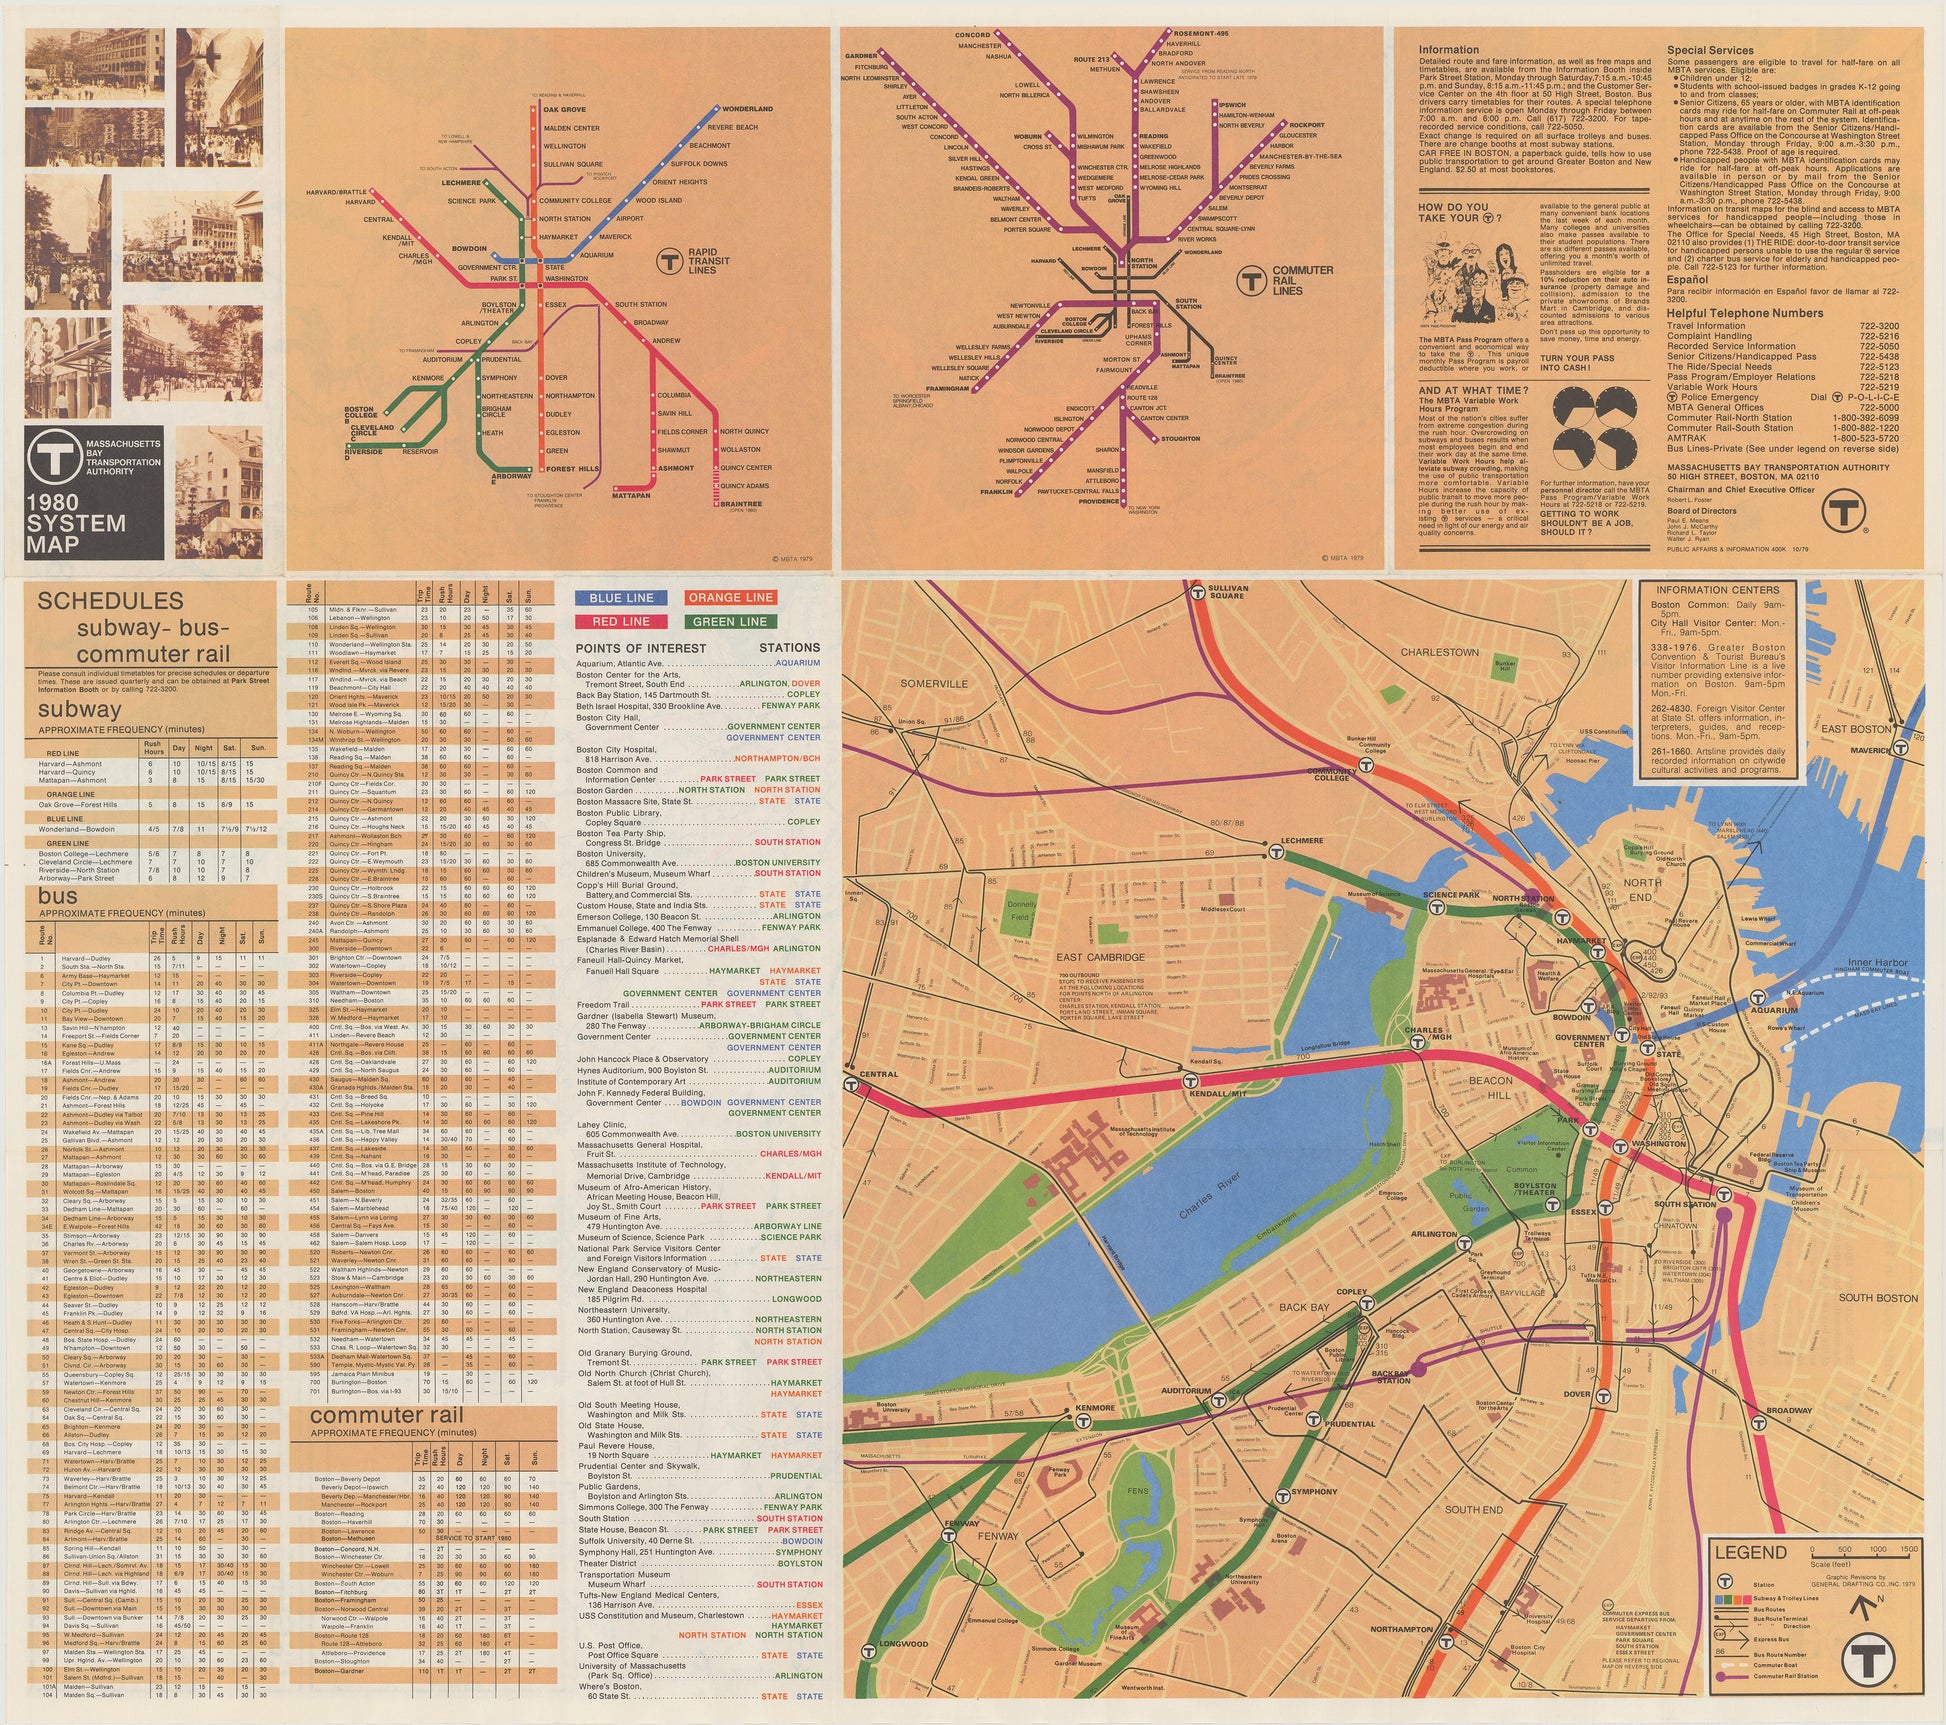 1980 MBTA System Map (Side B)